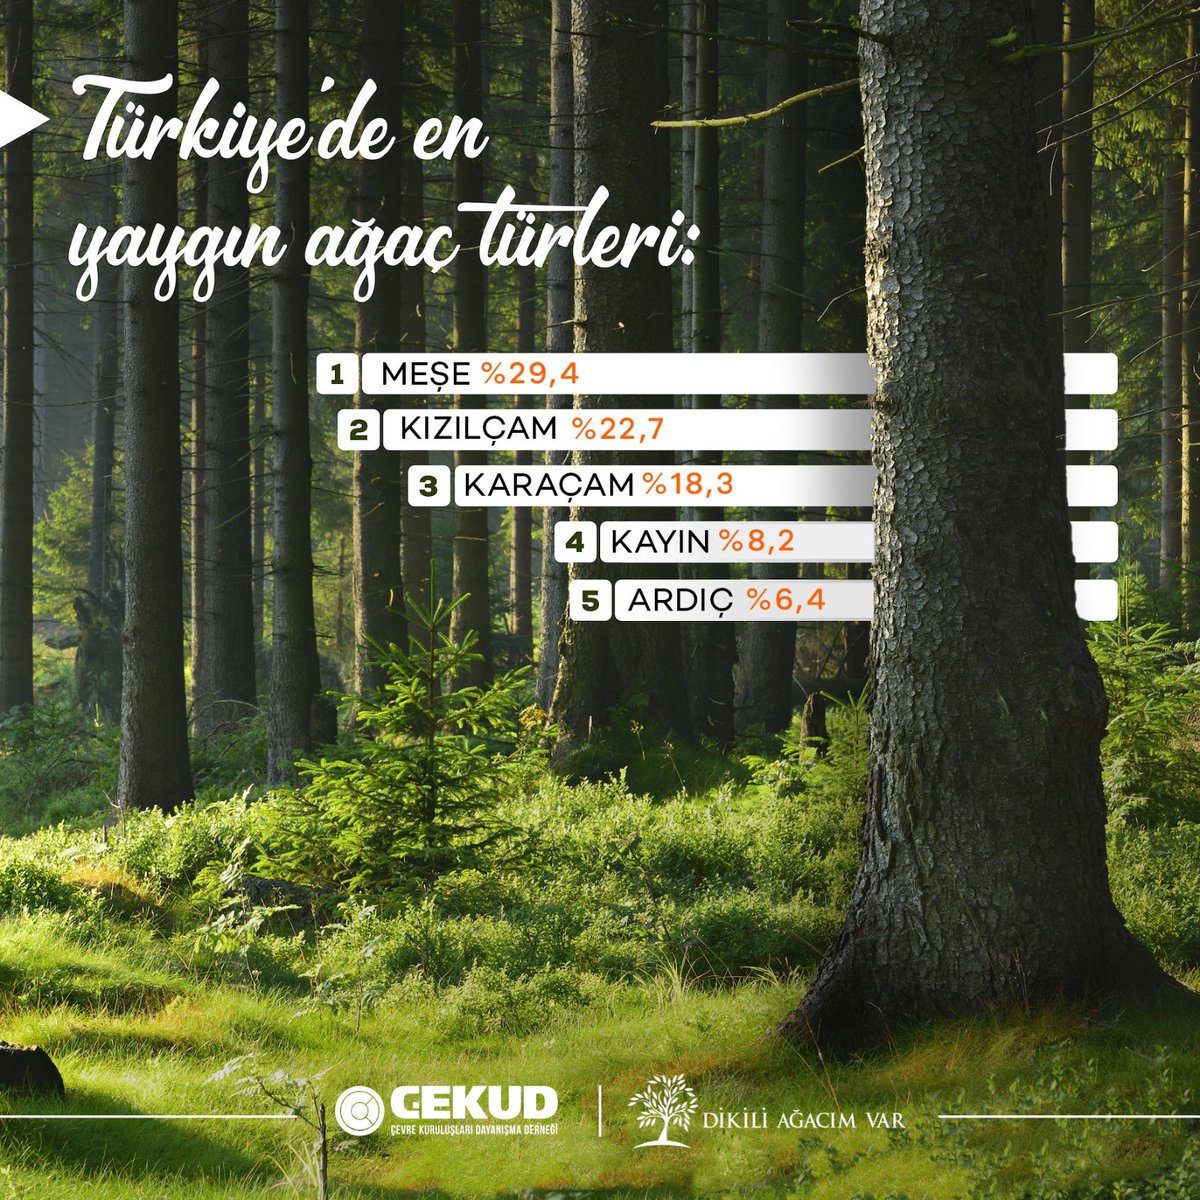 Türkiye’de en yaygın ağaç türleri🌳🌲

Yeşil bir gelecek için bu sayıları arttırmalıyız. Bu sayılar arttıkça aldığımız nefes, yaşadığımız dünya değişecek.

#meşe #kızılçam #orman #ağaç #karaçam #ormangenelmüdürlüğü